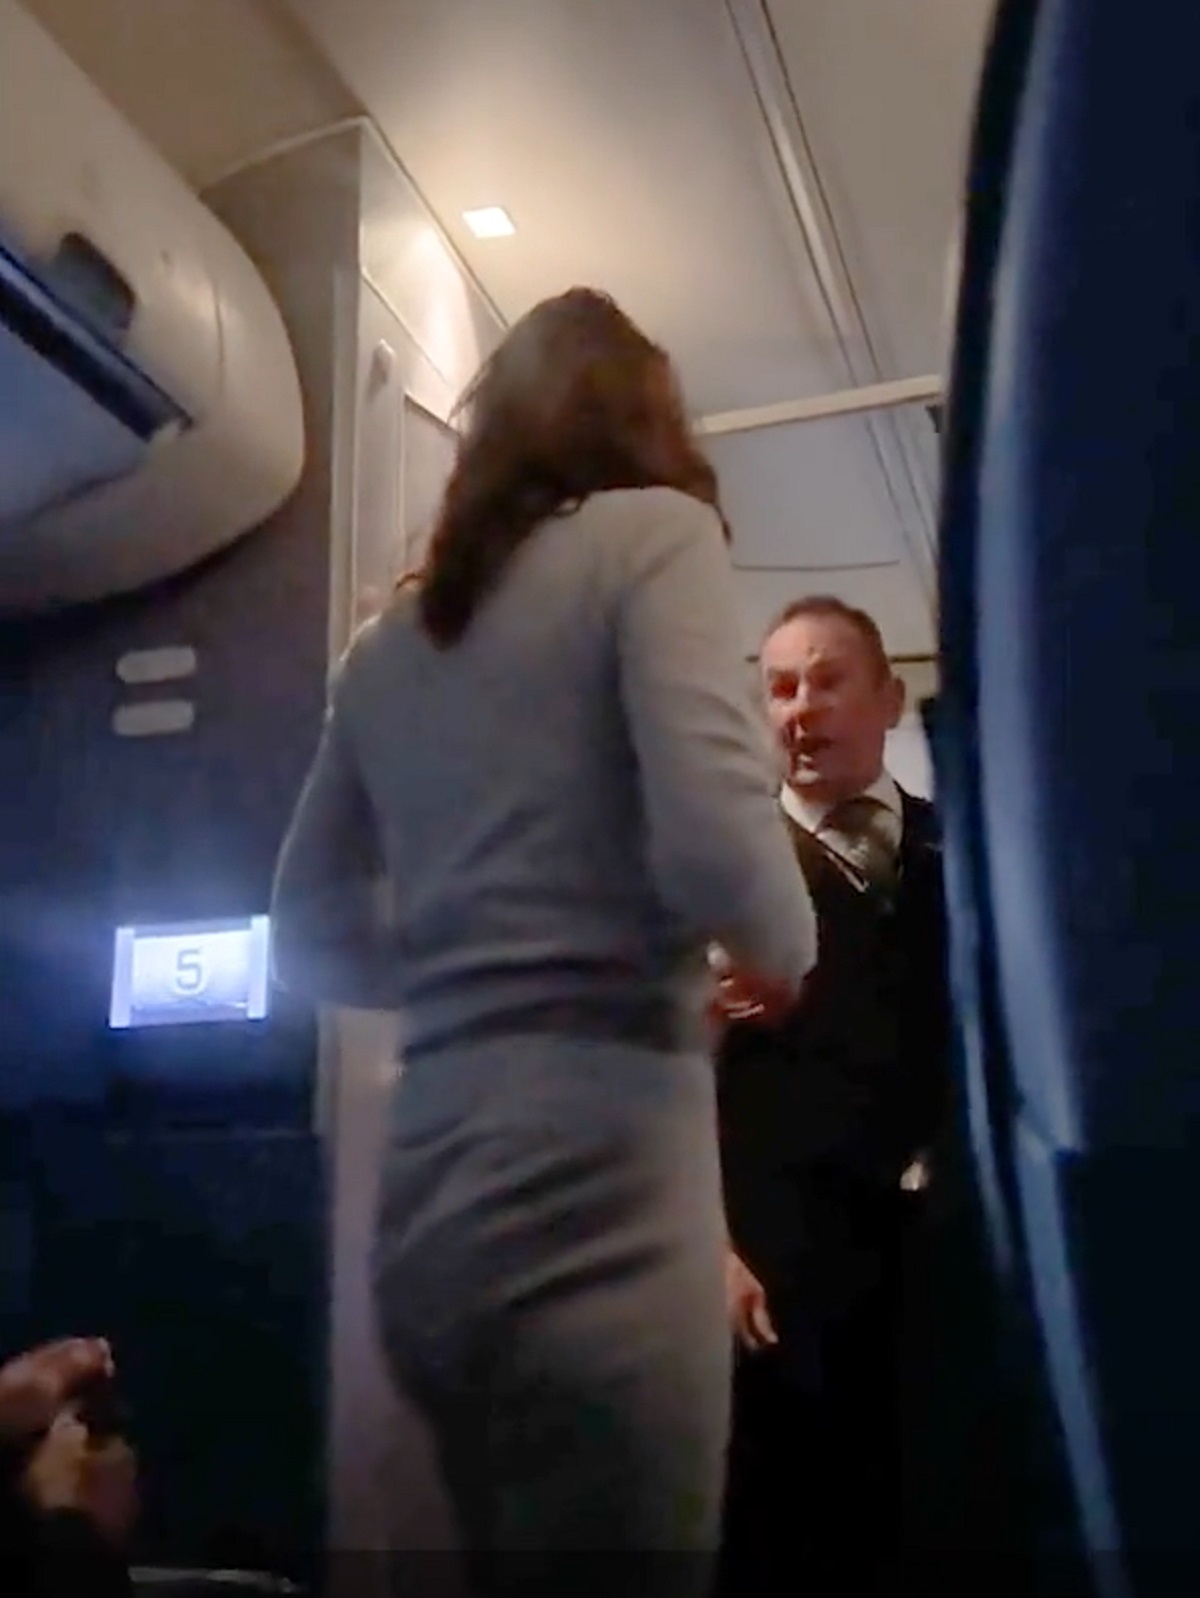 مضيف الطيران يحاول إجبار المرأة الغاضبة على الجلوس في مقعدها